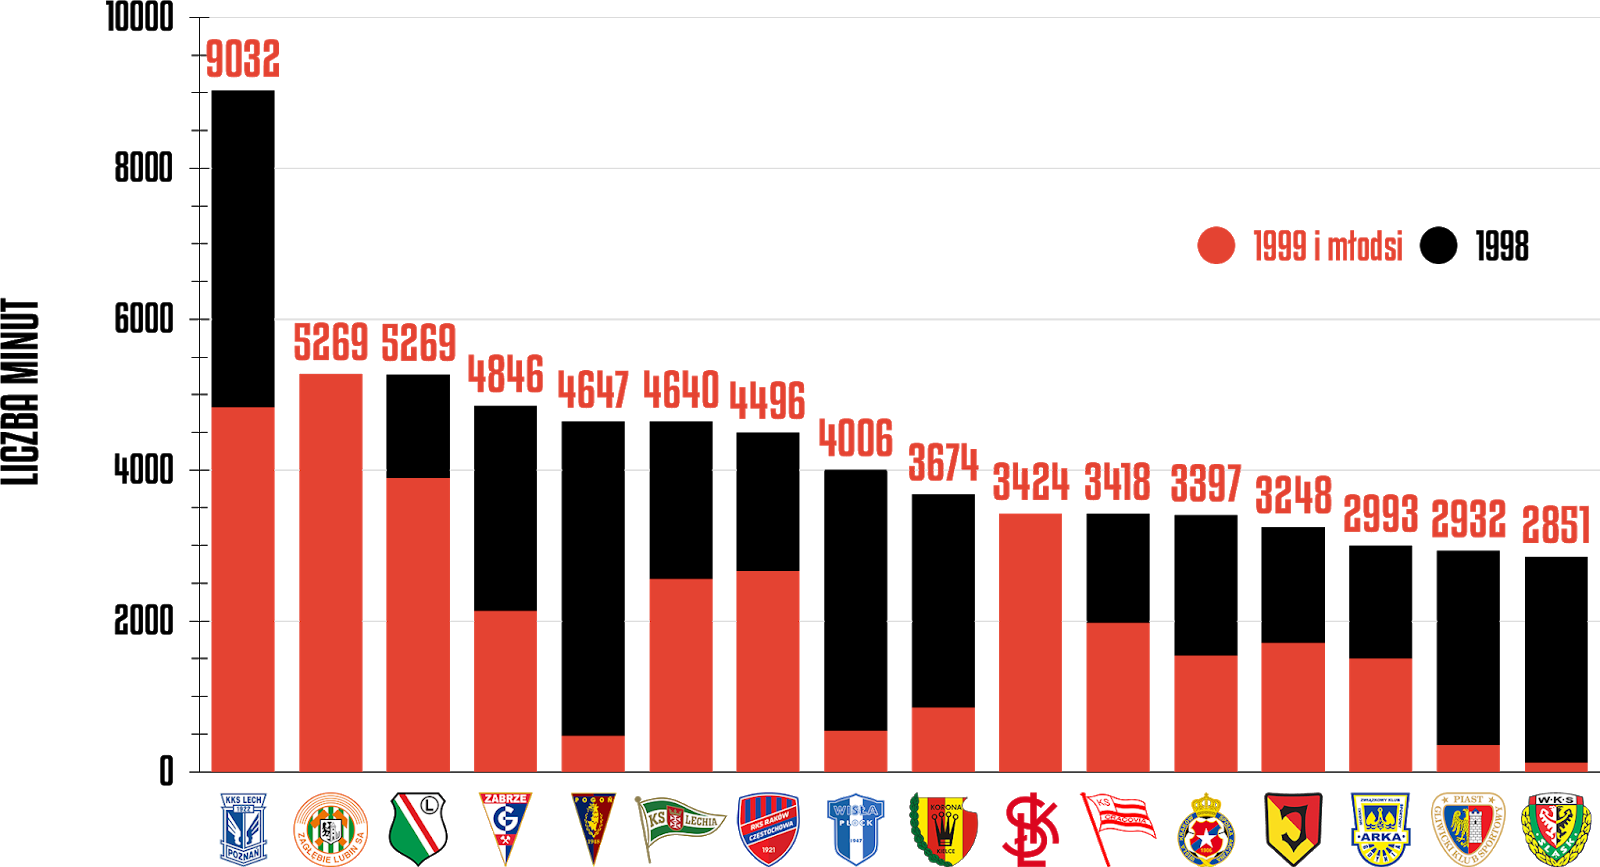 Klasyfikacja klubów pod względem rozegranych minut przez młodzieżowców po 31 kolejkach PKO Ekstraklasy<br><br>Źródło: Opracowanie własne na podstawie ekstrastats.pl<br><br>graf. Bartosz Urban